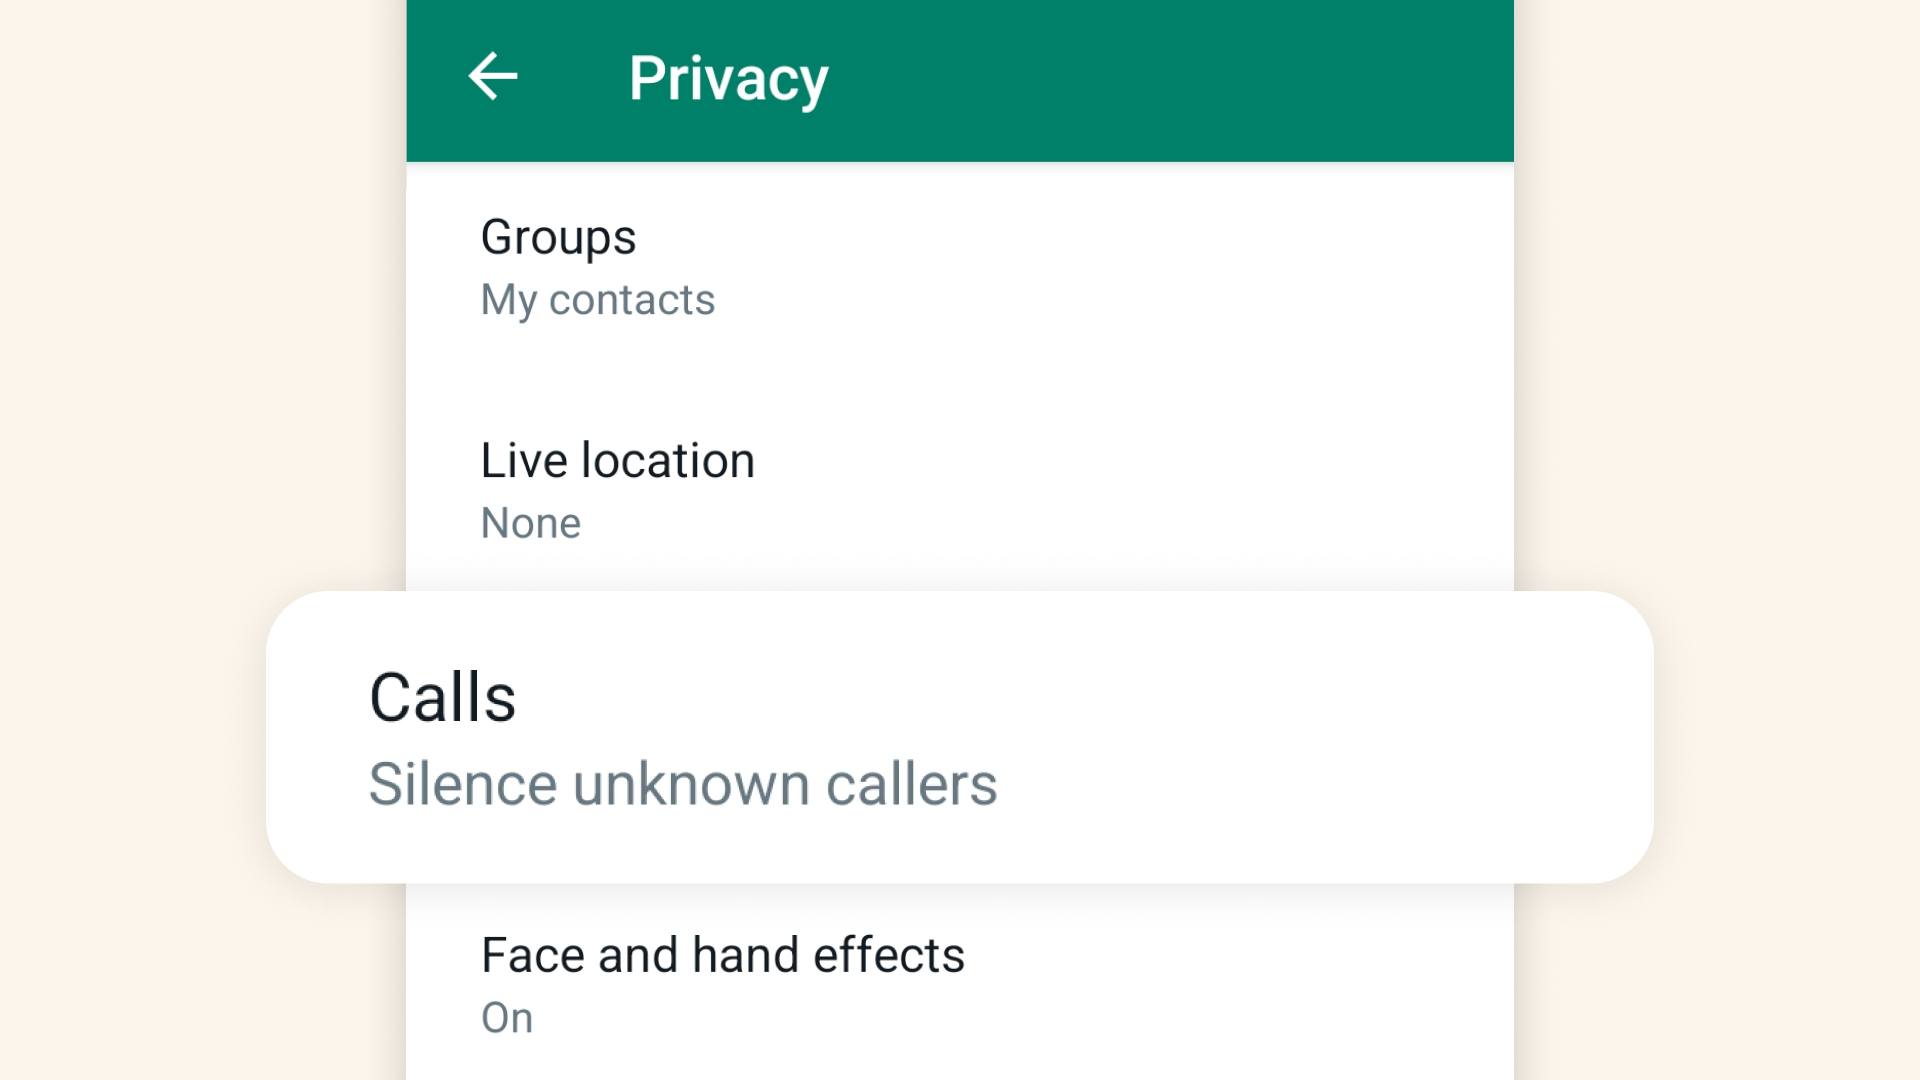 WhatsApp Resmi Hadirkan Fitur Baru untuk Atasi Panggilan Spam